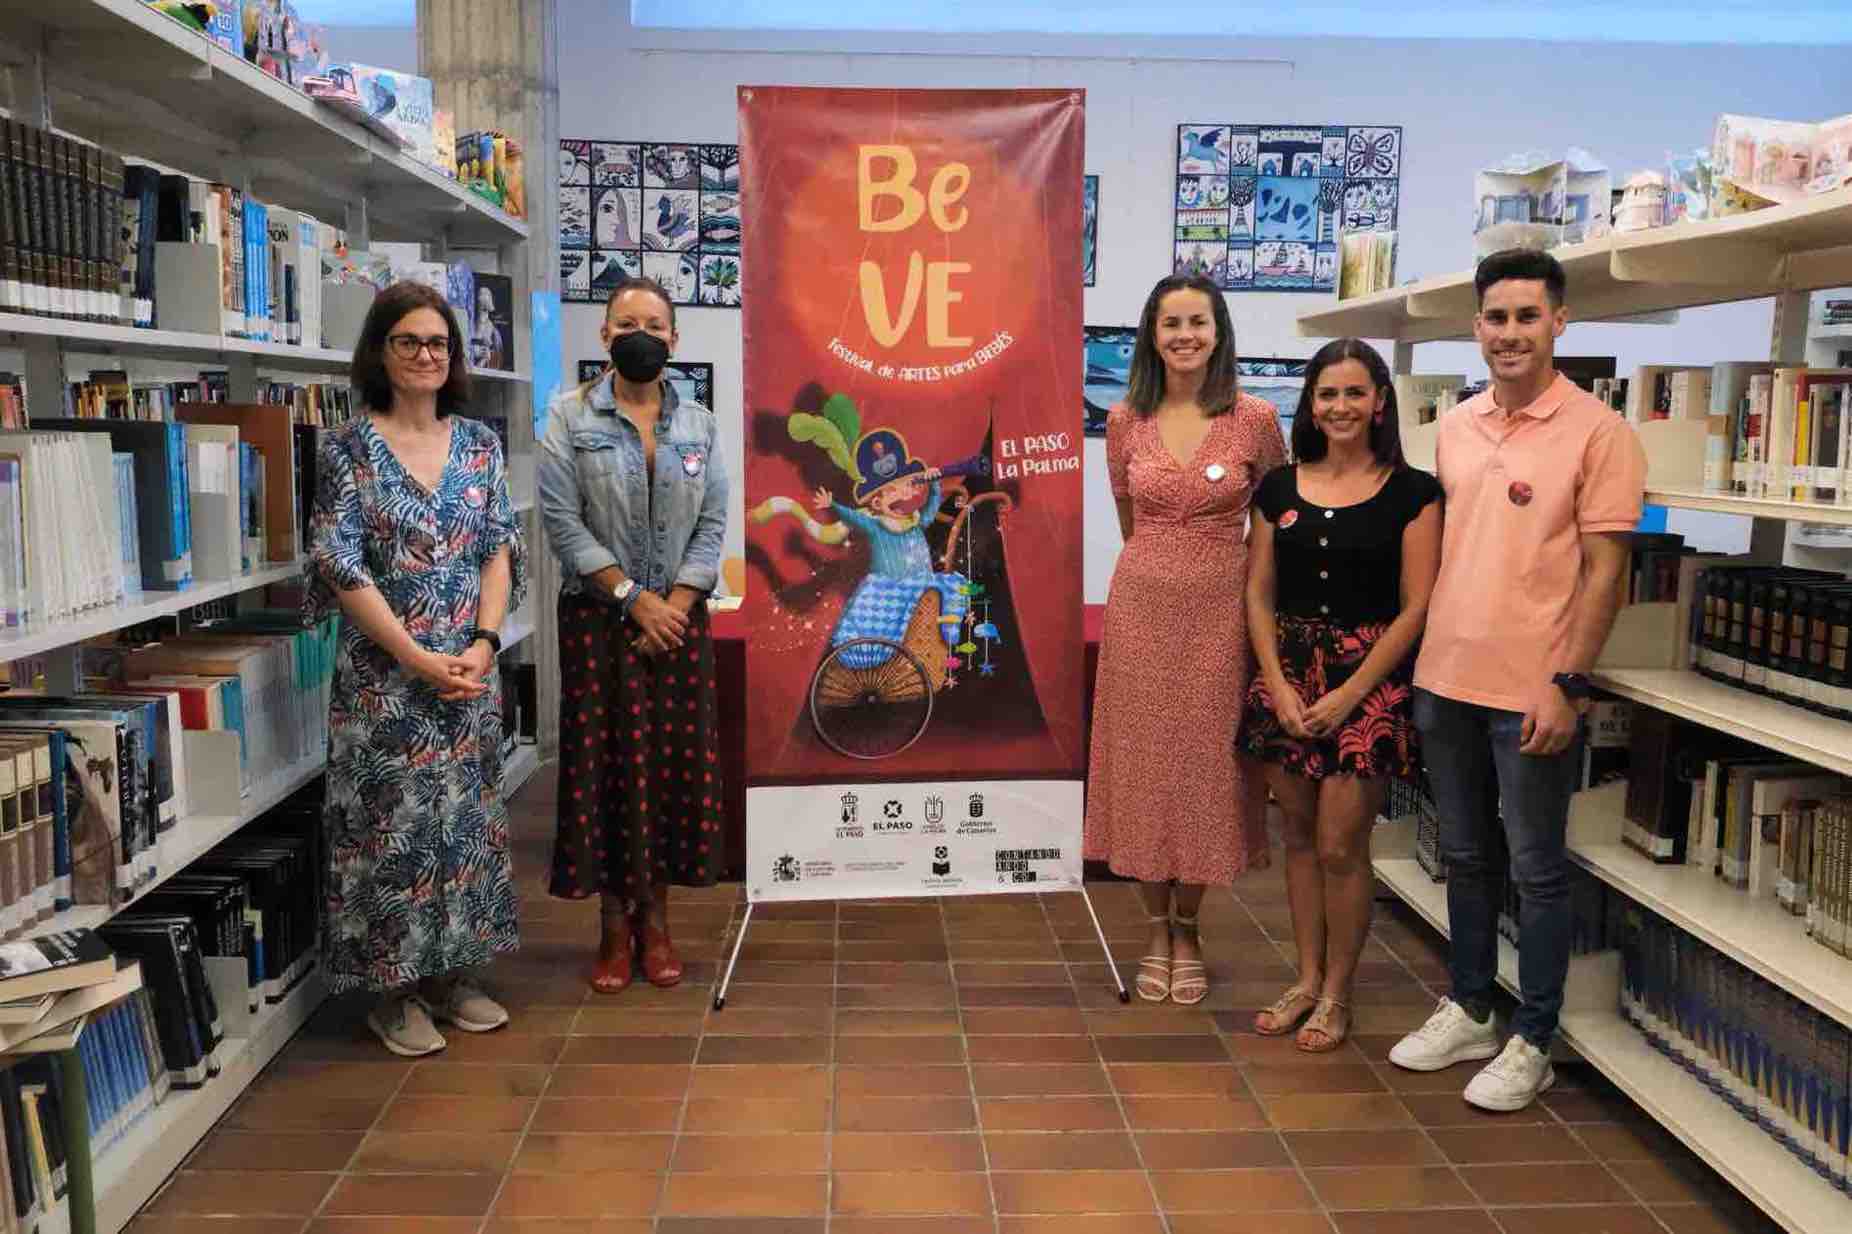 El Paso celebra la tercera edición del Festival de Artes para Bebés ‘BeVe’